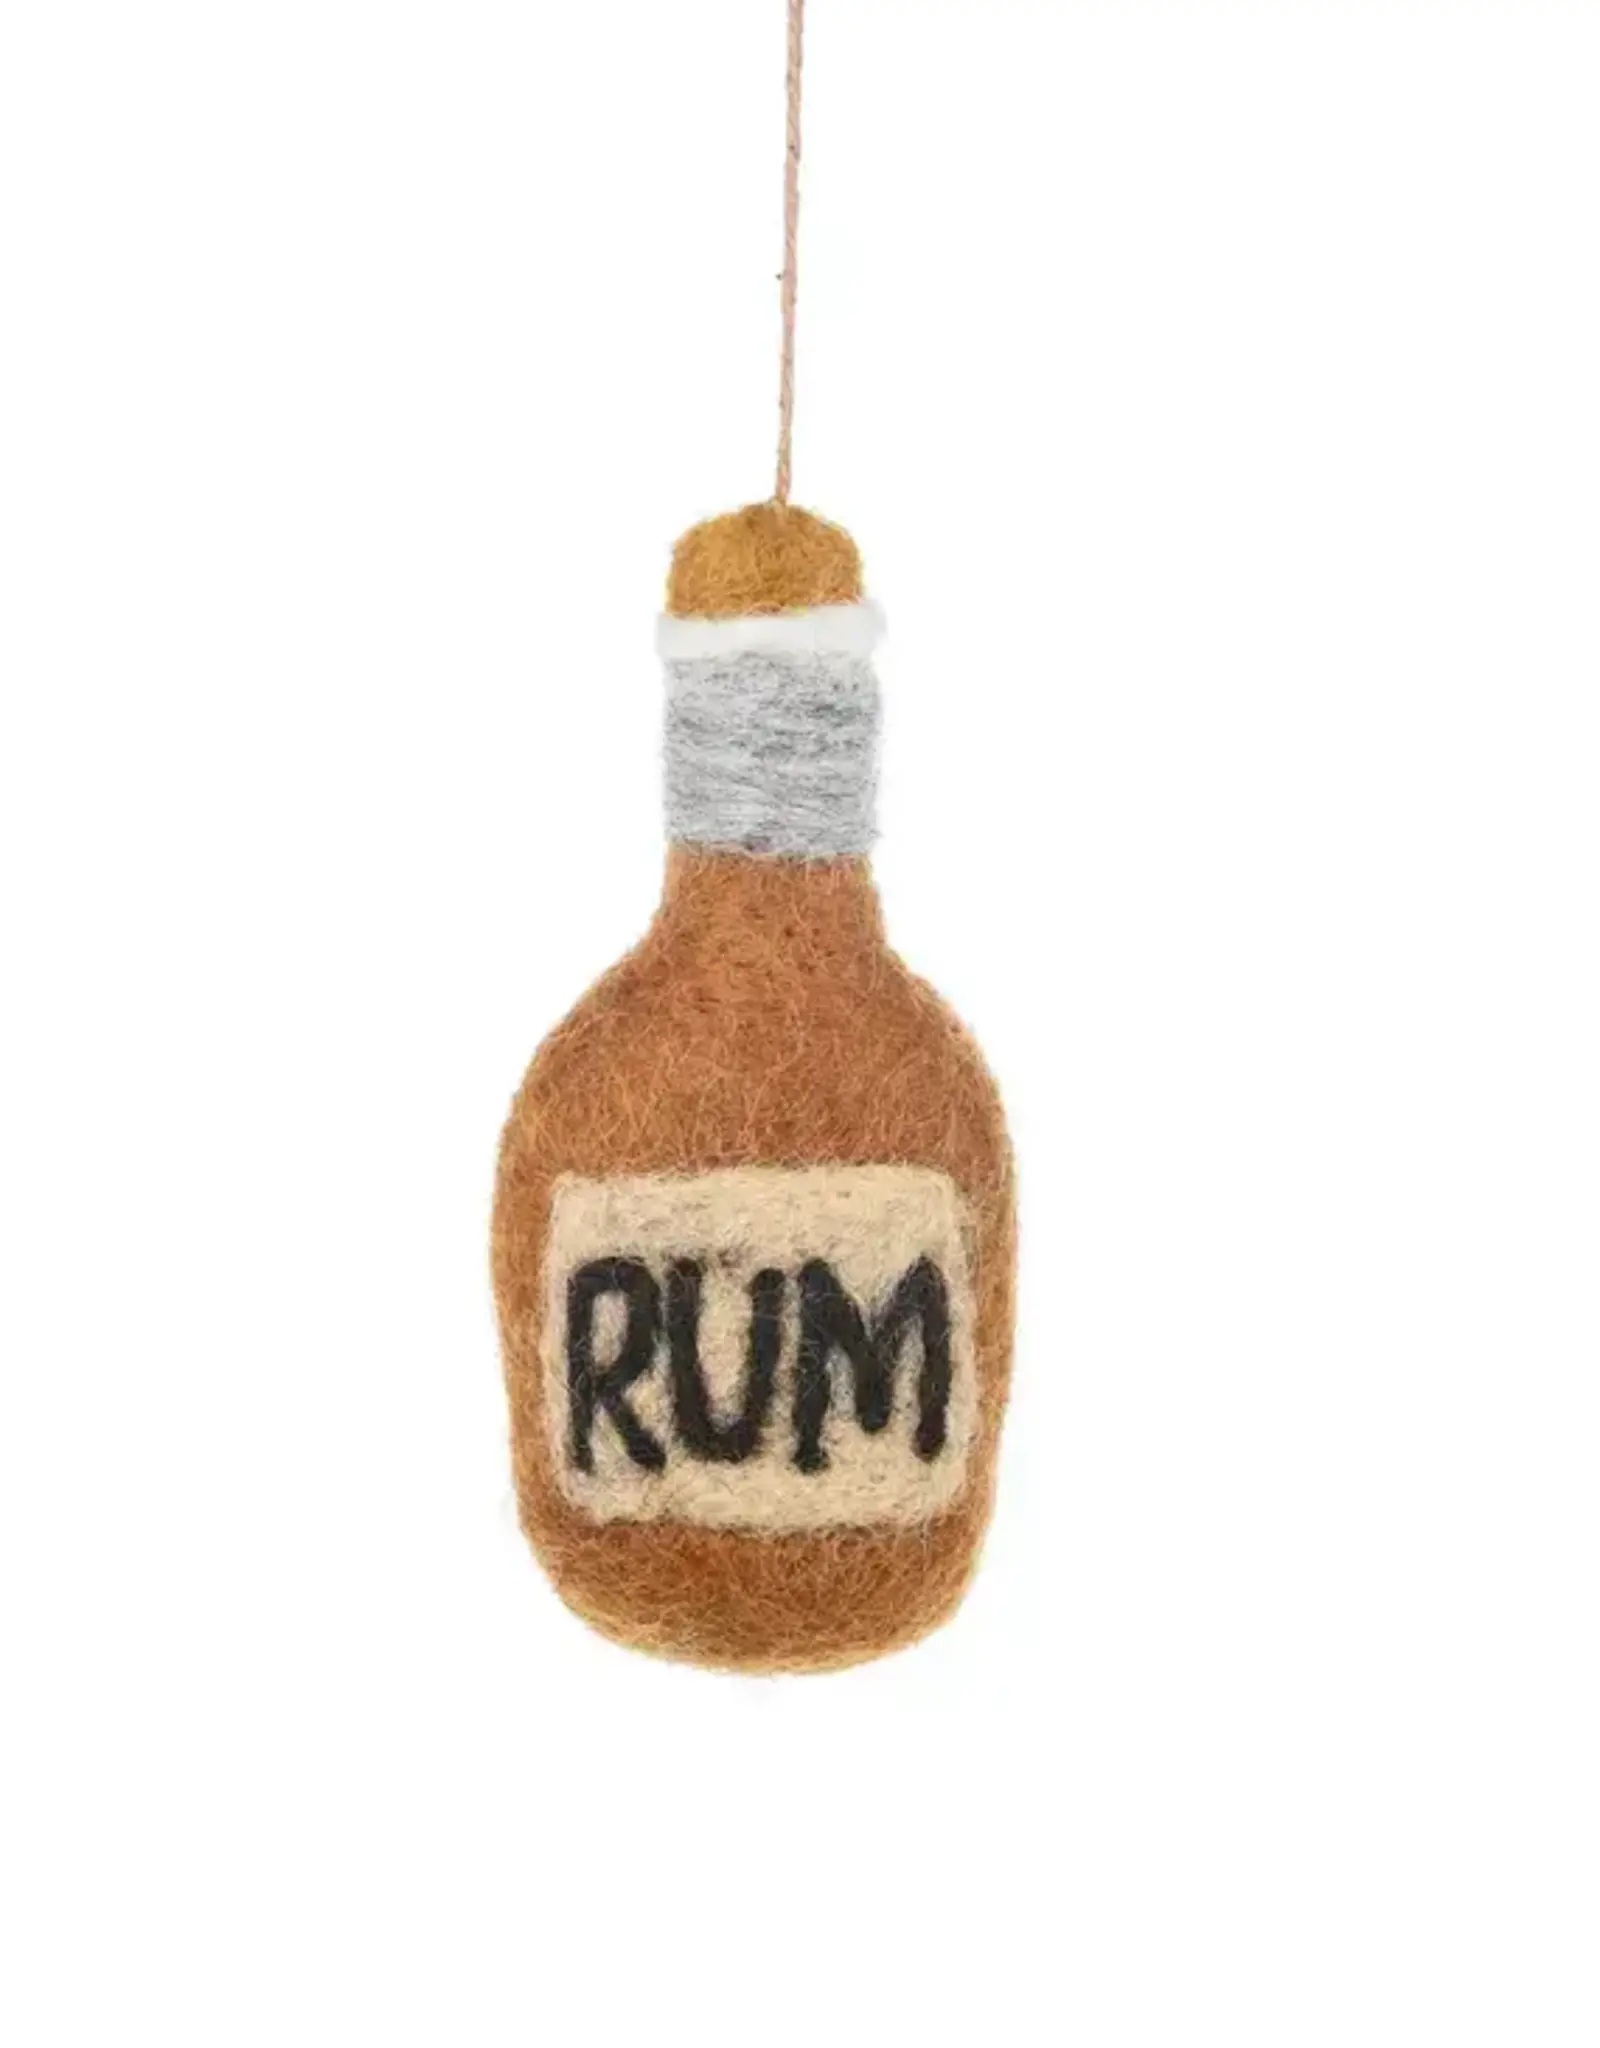 Felt So Good Bottle of Rum Ornament